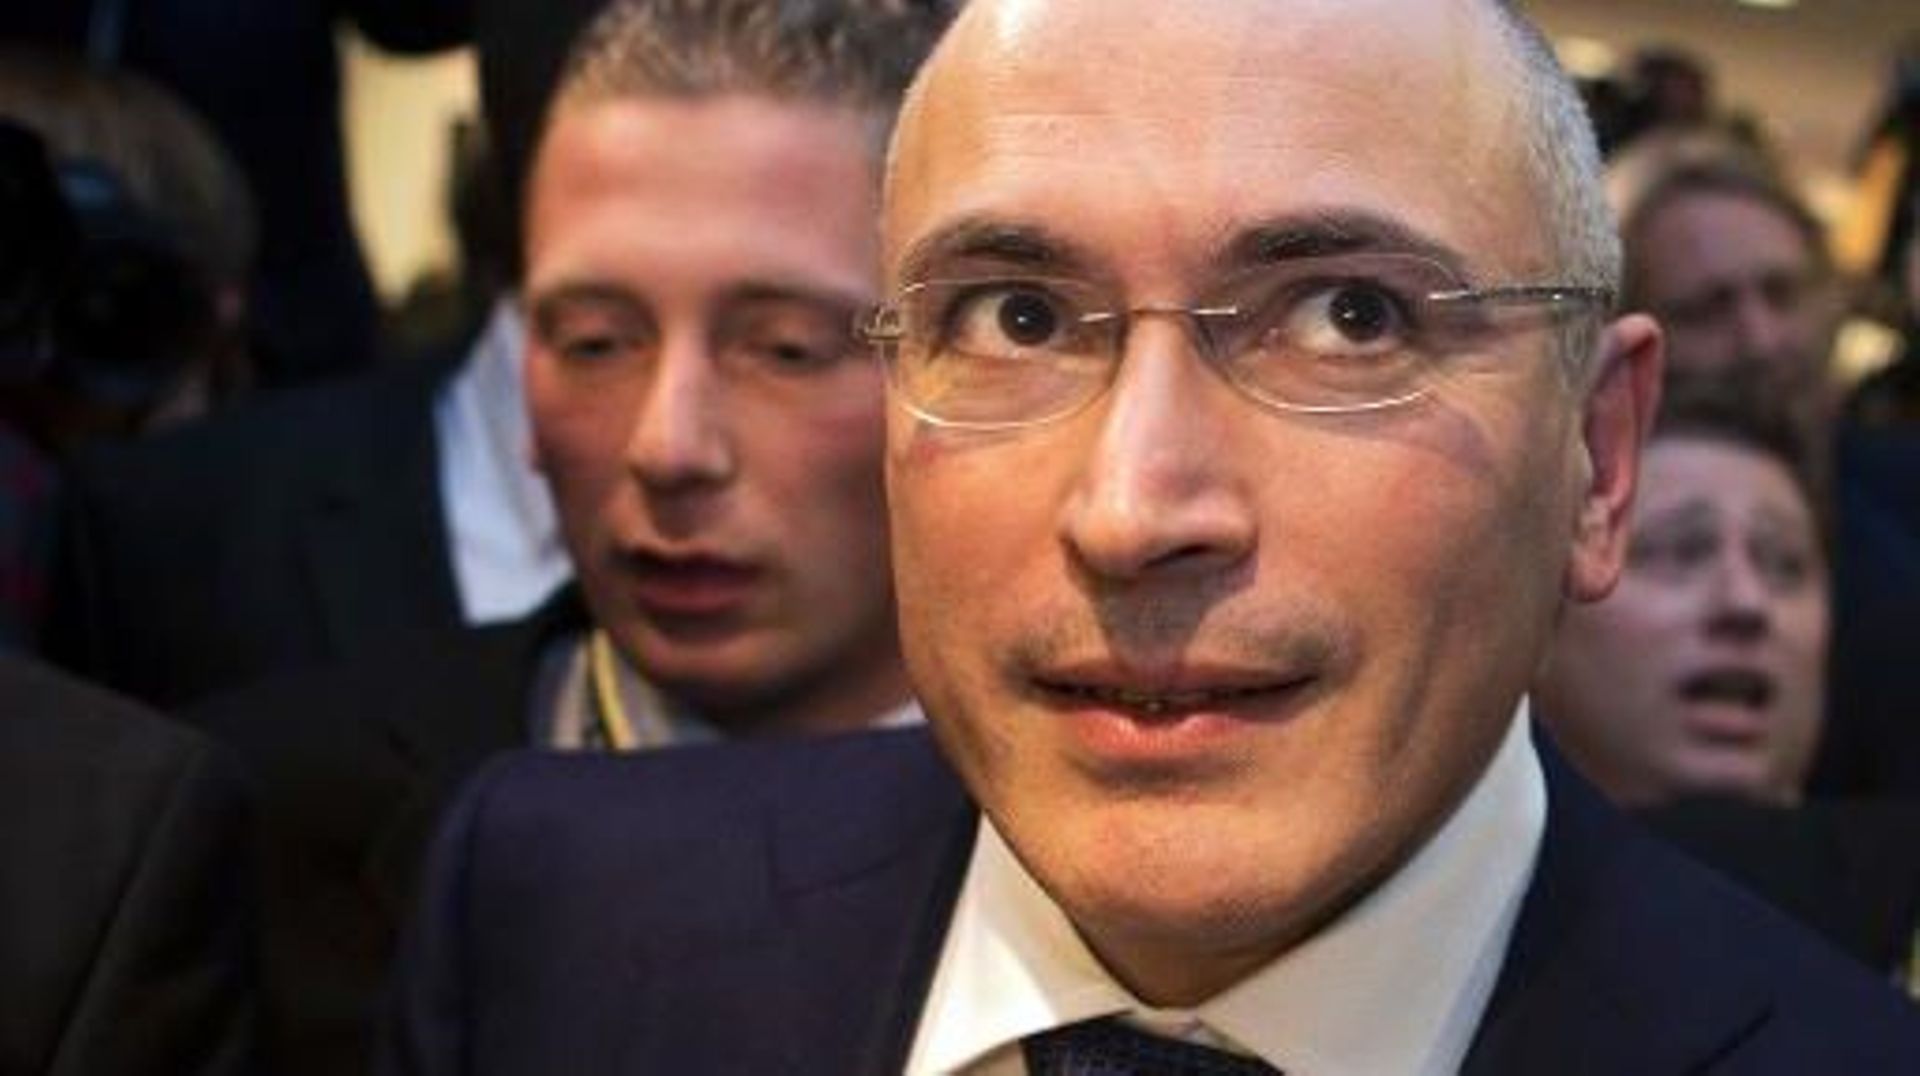 L'ex-oligarque critique du Kremlin Mikhaïl Khodorkovski quitte le musée du Mur à Berlin le 22 décembre 2013